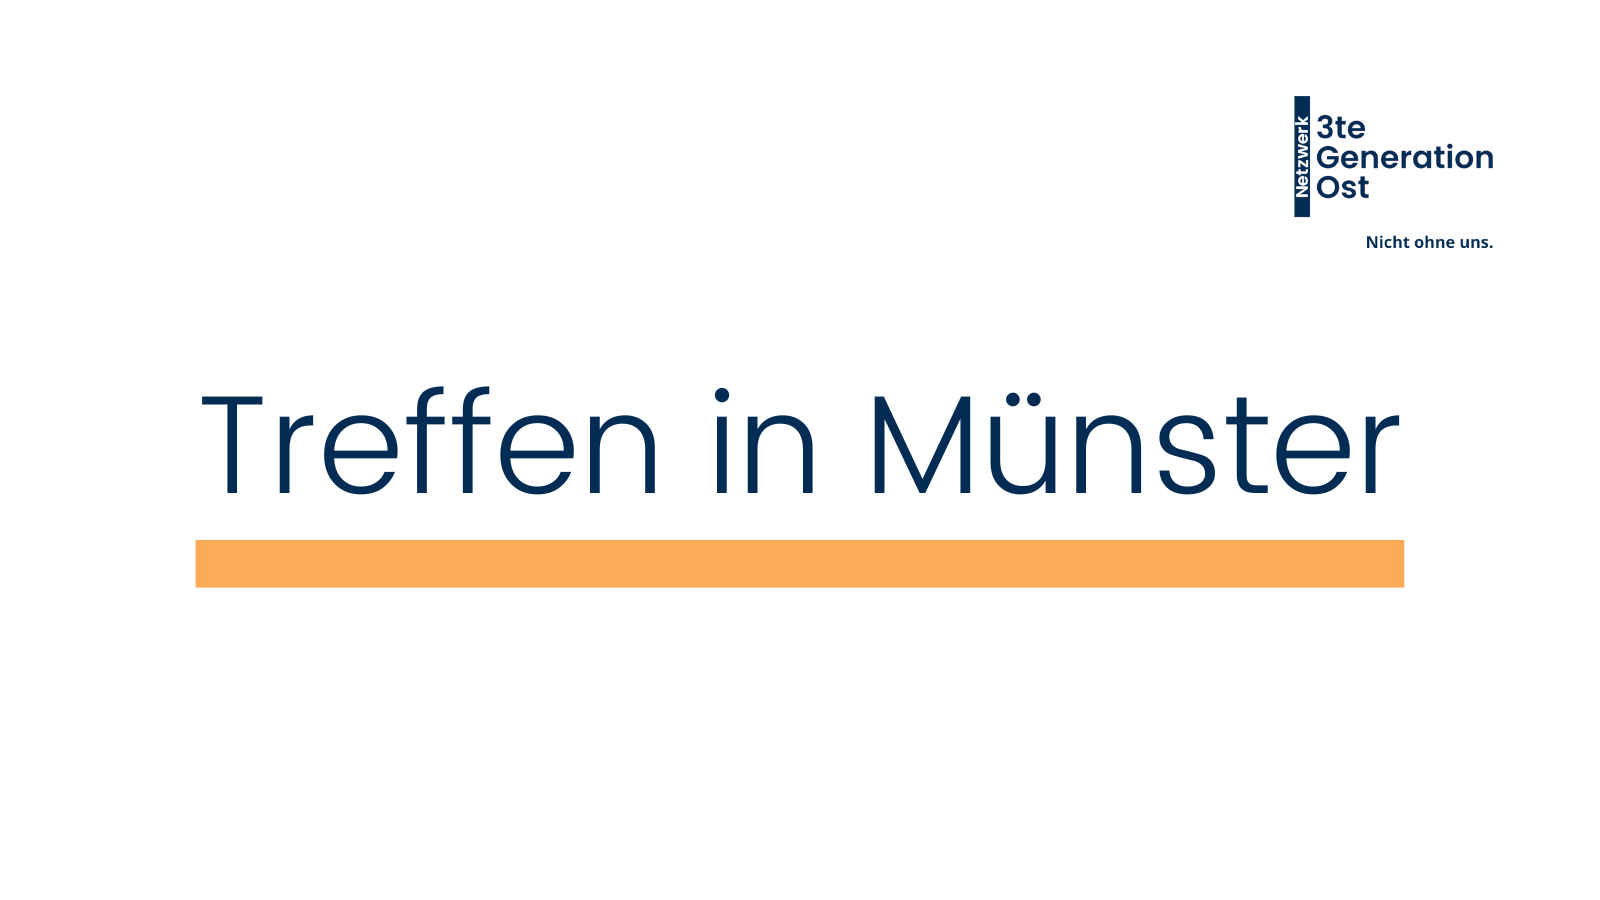 Logo Netzwerk 3te Generation Ost oben rechts. Mittig platziert in dunkelblau - Treffen in Münster mit orangenem Unterstrich